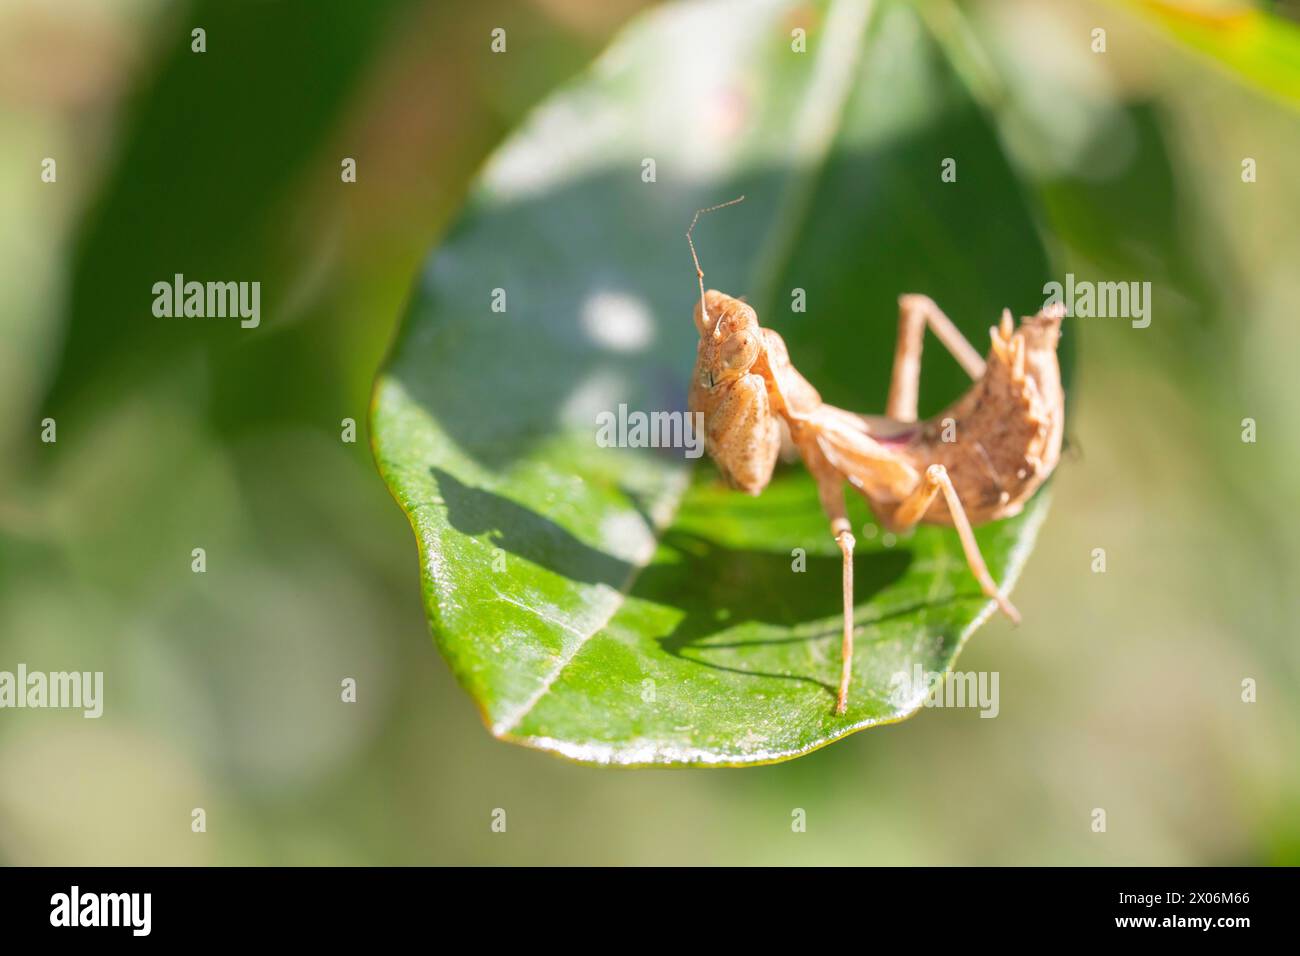 European preying mantis (Mantis religiosa), on a leaf, side view, Italy Stock Photo